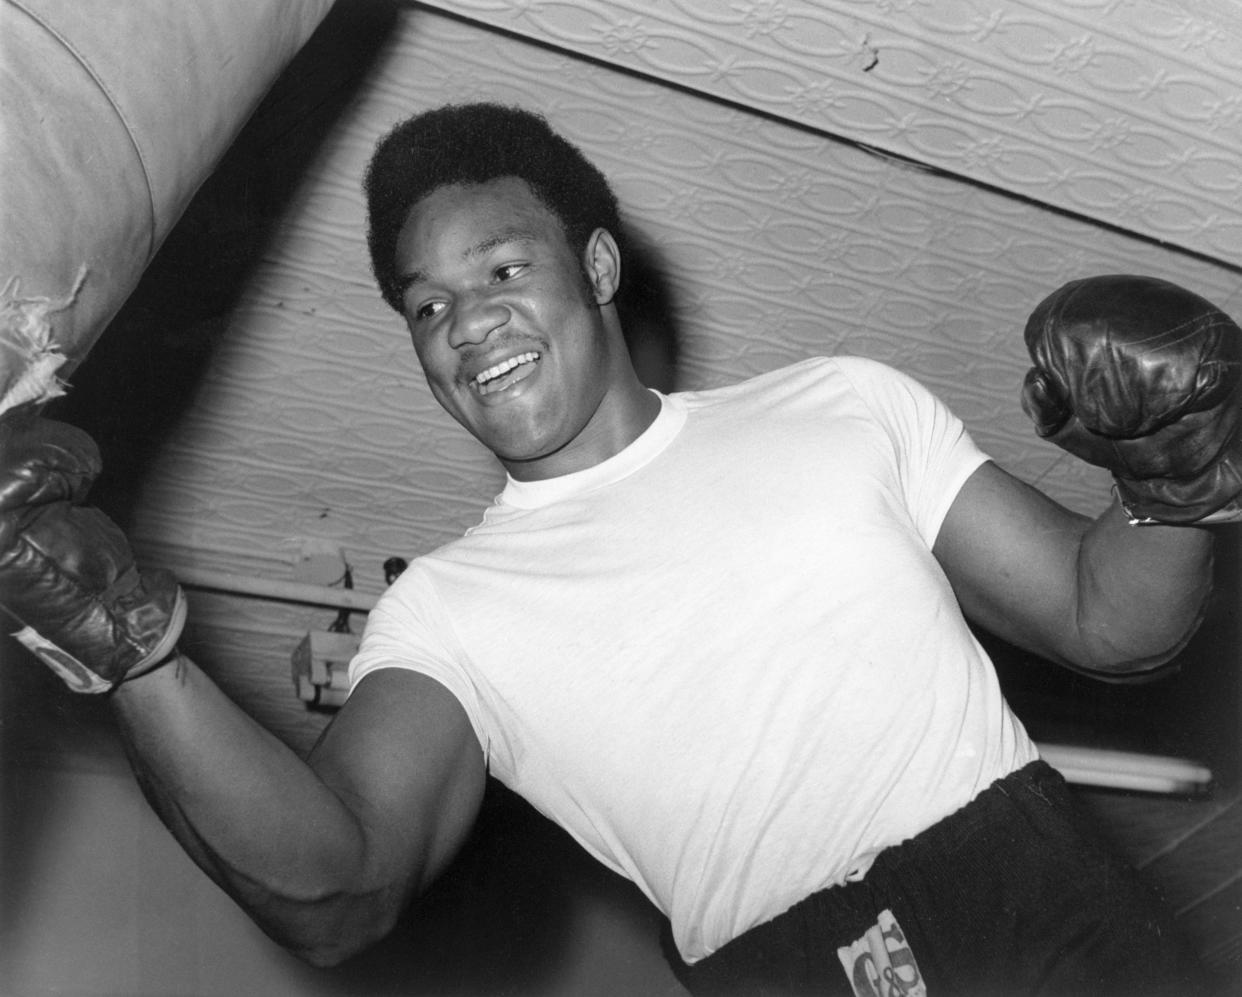 Una foto de archivo muestra al boxeador George Foreman golpeando una bolsa de ejercicios. (Foto: Getty Images)